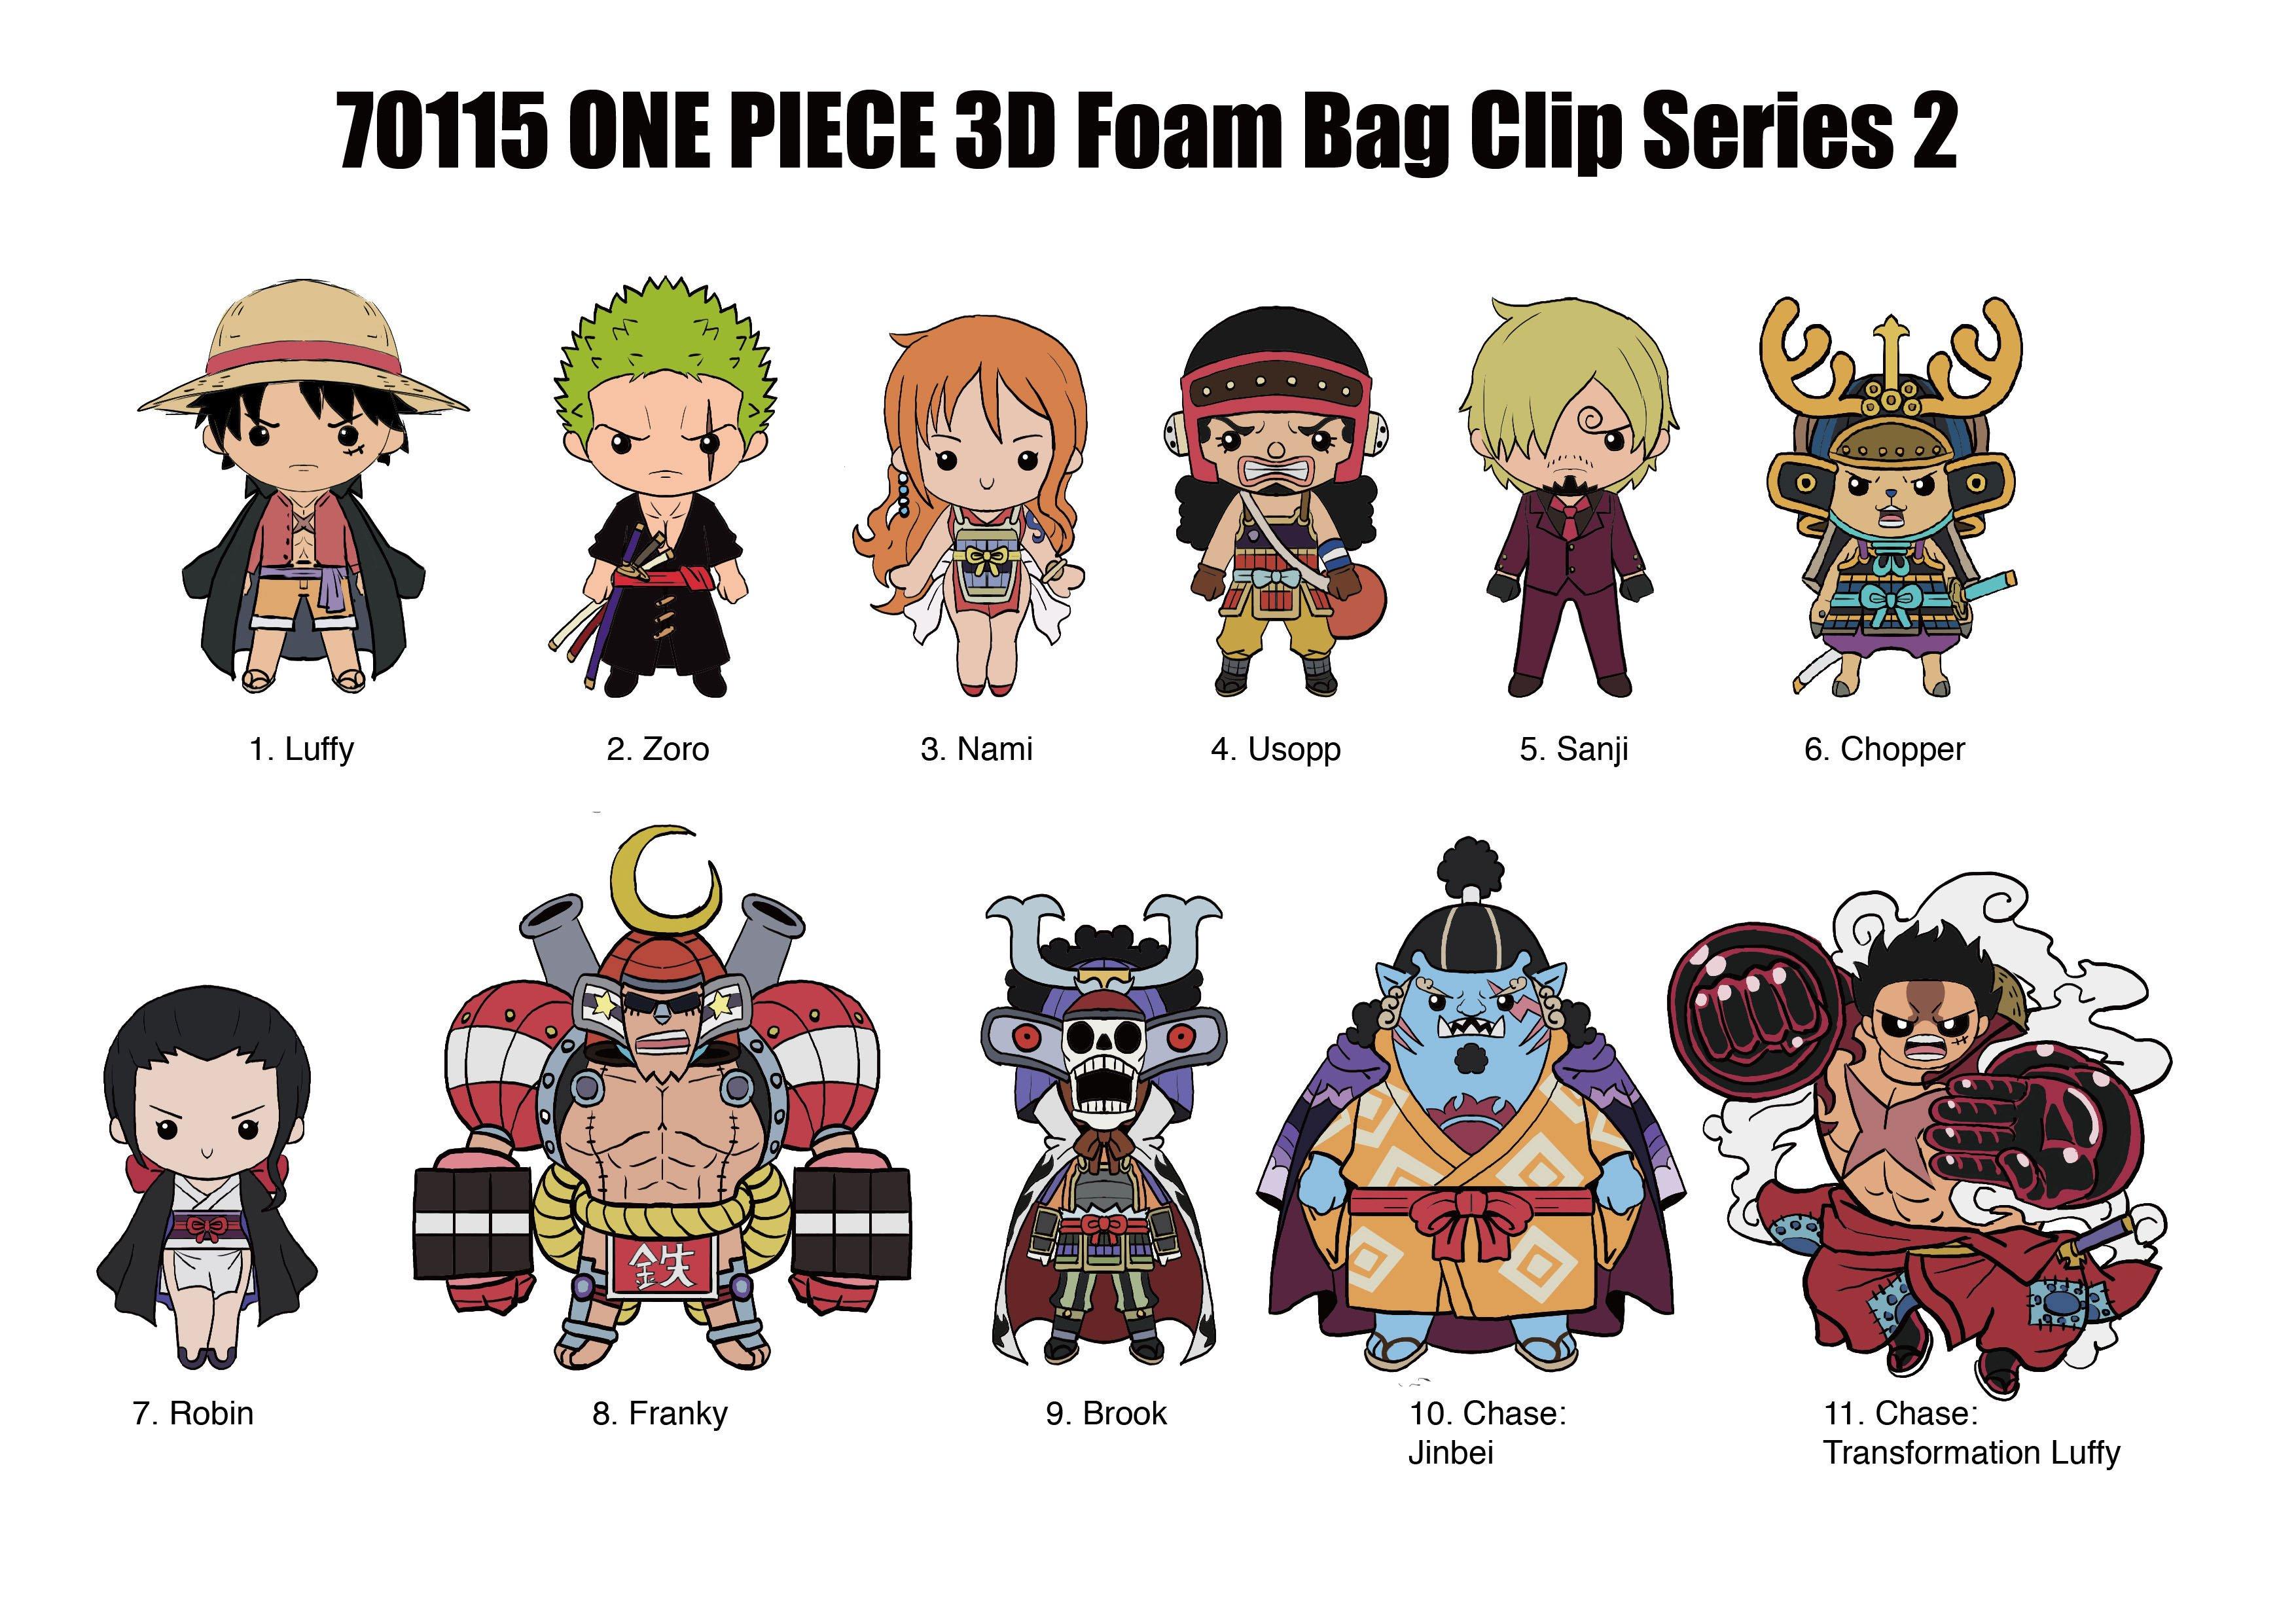 https://media.gamestop.com/i/gamestop/11167186_ALT01/One-Piece-Series-2---3D-Foam-Bag-Clip-Blind-Bag?$pdp$